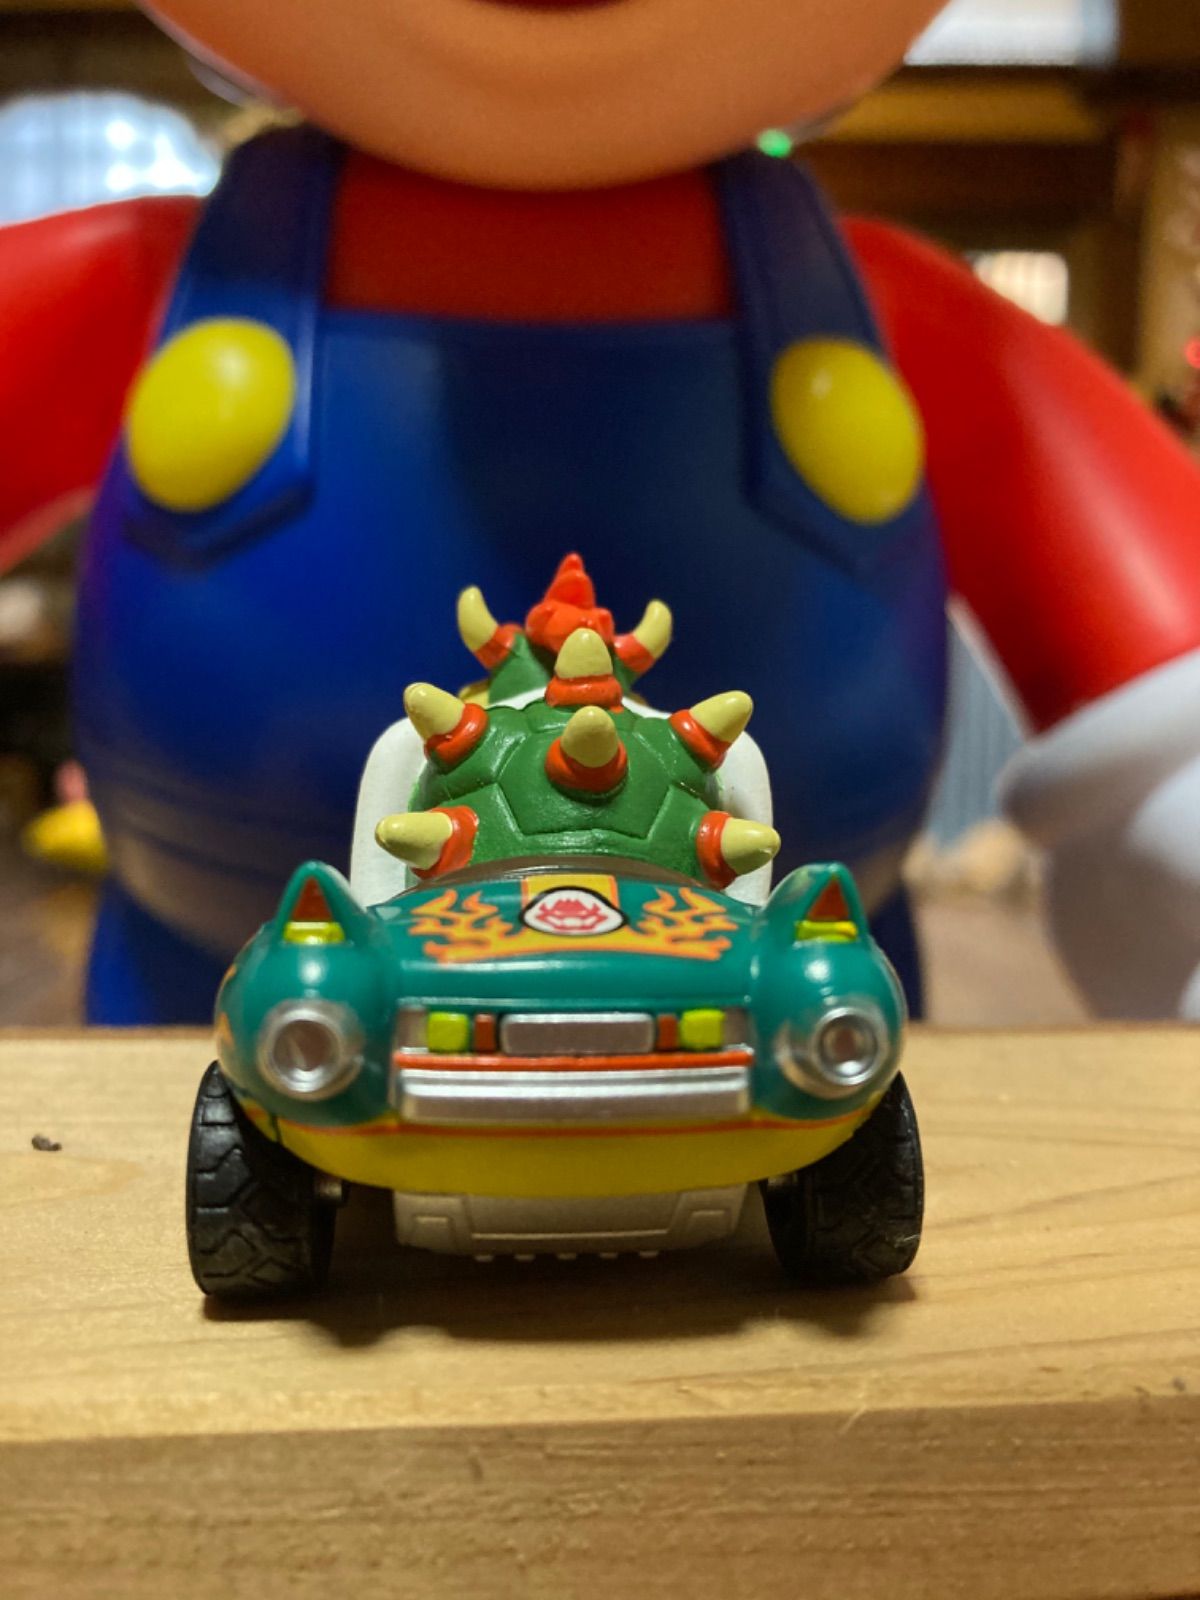 マリオカート プルバックカー フィギュア - ゲームキャラクター